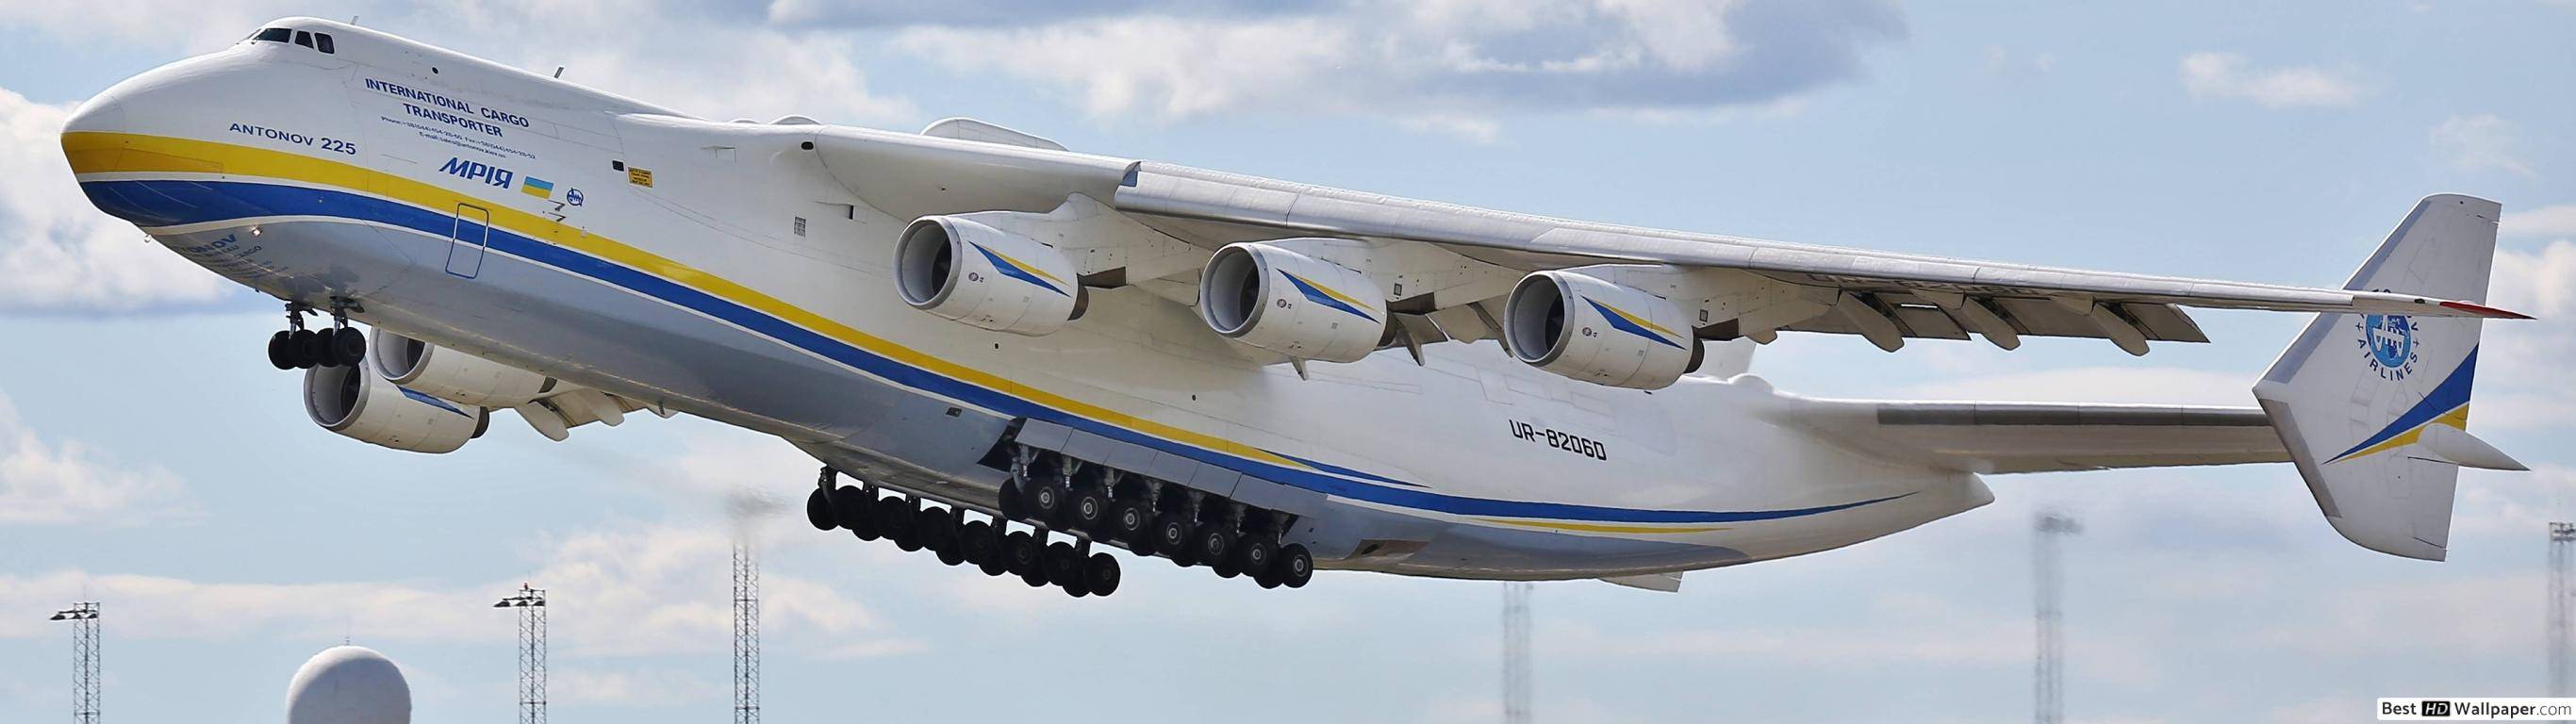 Самый большой грузовой самолет ан-225 «мрия» после ремонта снова замечен в небе